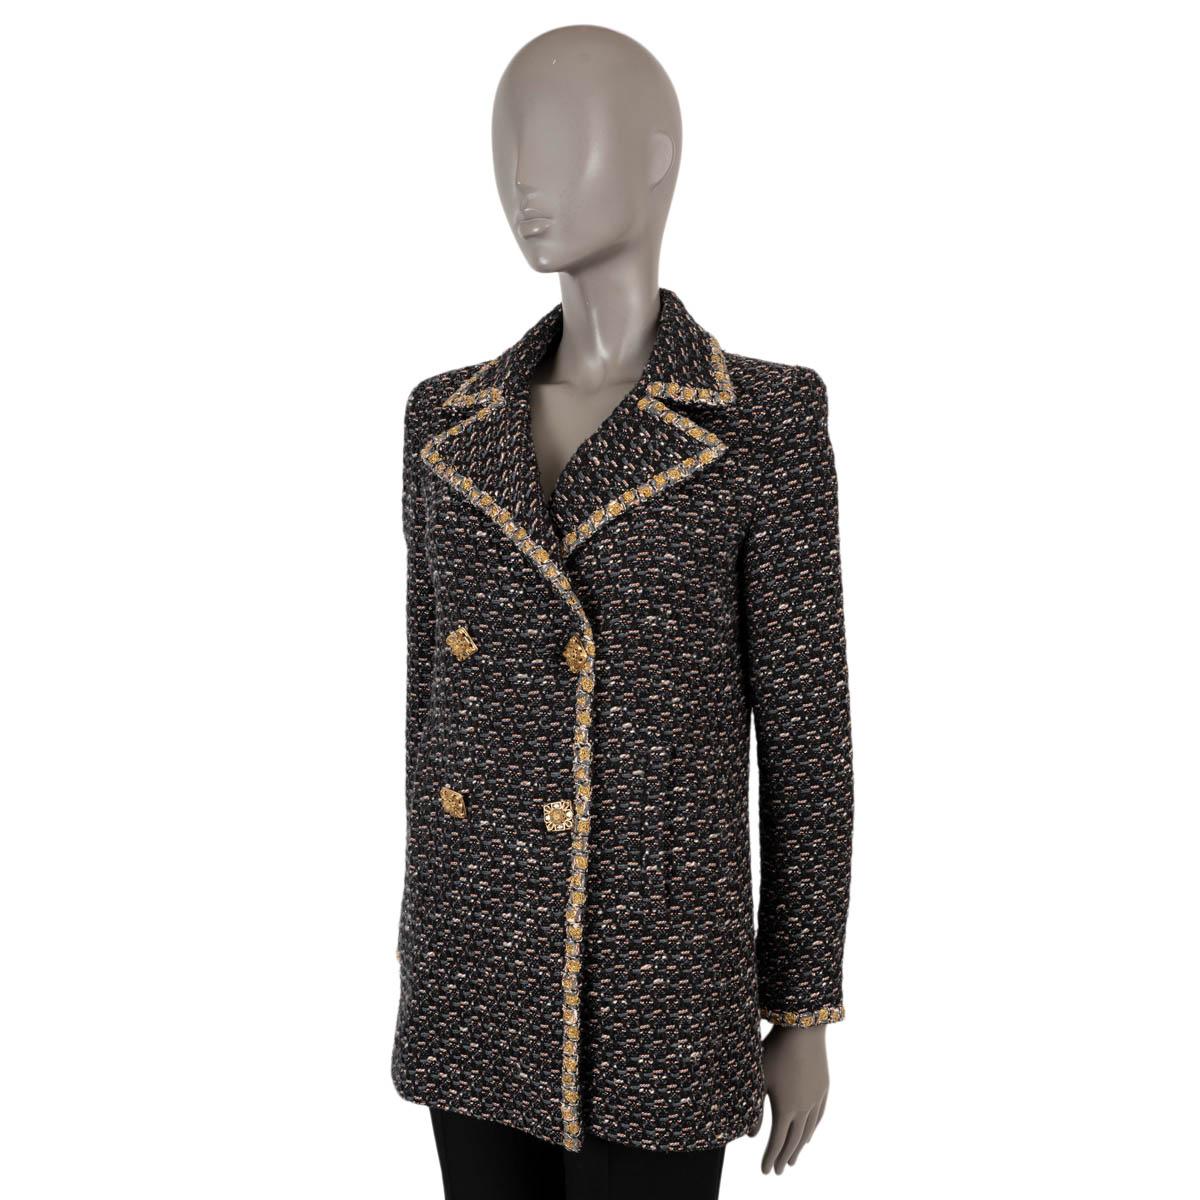 Veste peacoat en tweed 100% authentique Chanel en laine tweed noire, grise, blanche et orange (69%), polyamide (20%) et coton (11%). Le modèle présente quatre boutons dorés ornés de pierres, un sur chaque poignet, une bordure tressée en lurex doré